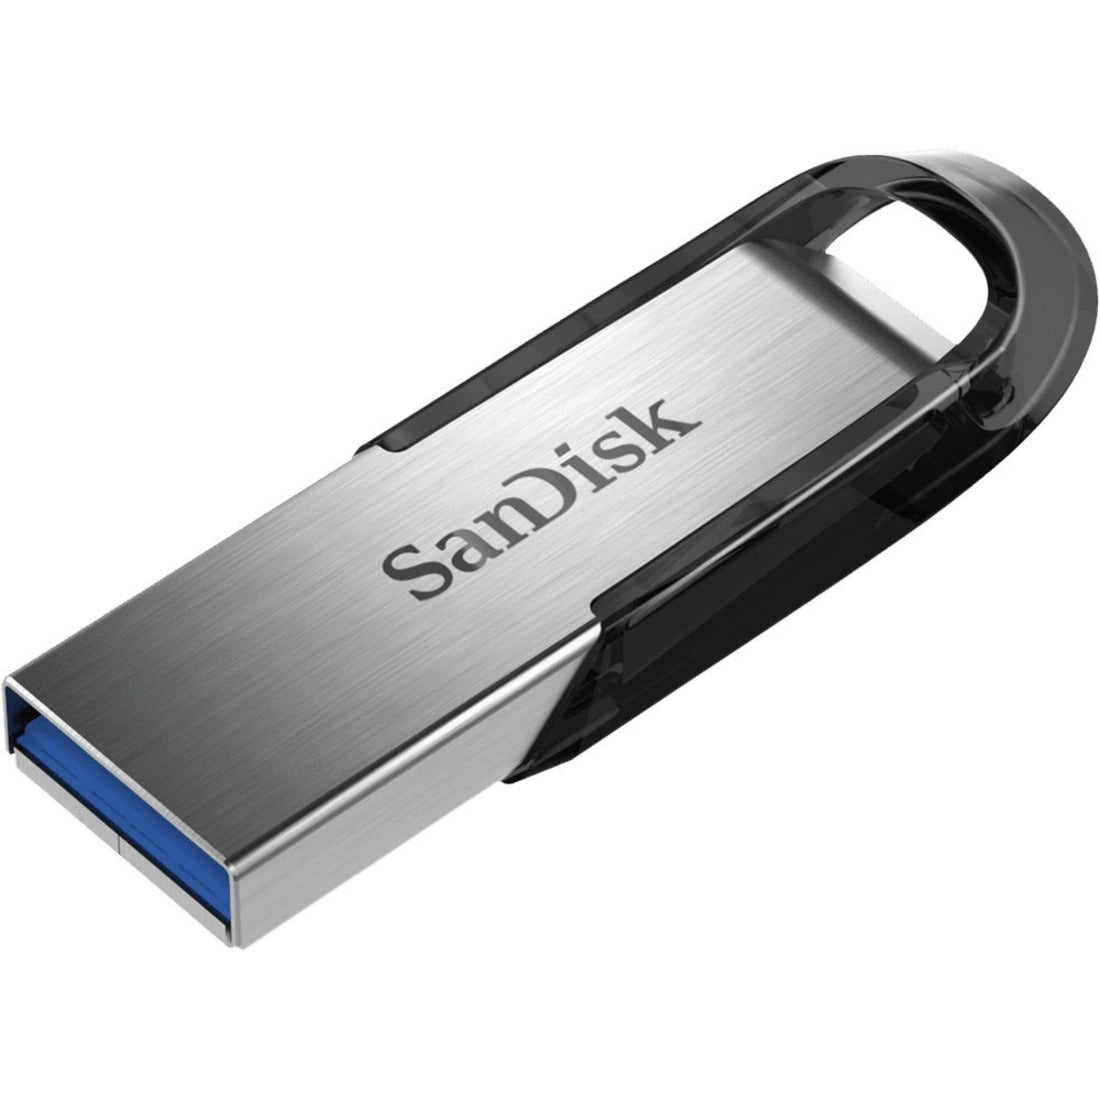 SanDisk SDCZ73-032G-A46 Ultra Flair USB 3.0 Flash Drive, 32GB, 5 Year Warranty